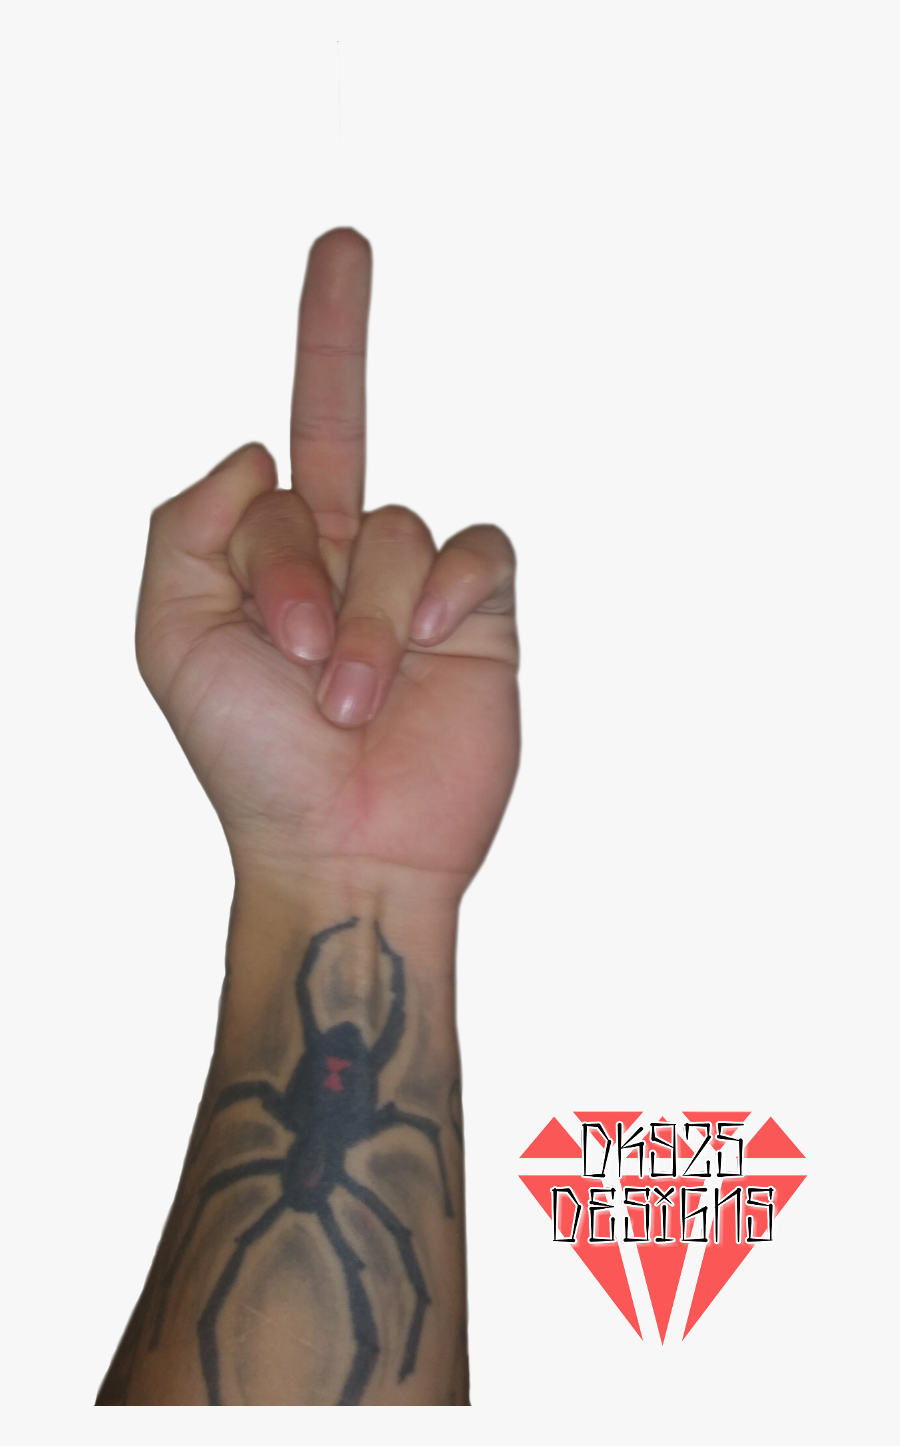 #flipoff #finger #hand #arm #dk925 #dk925designs - Flipping The Bird Png, Transparent Clipart